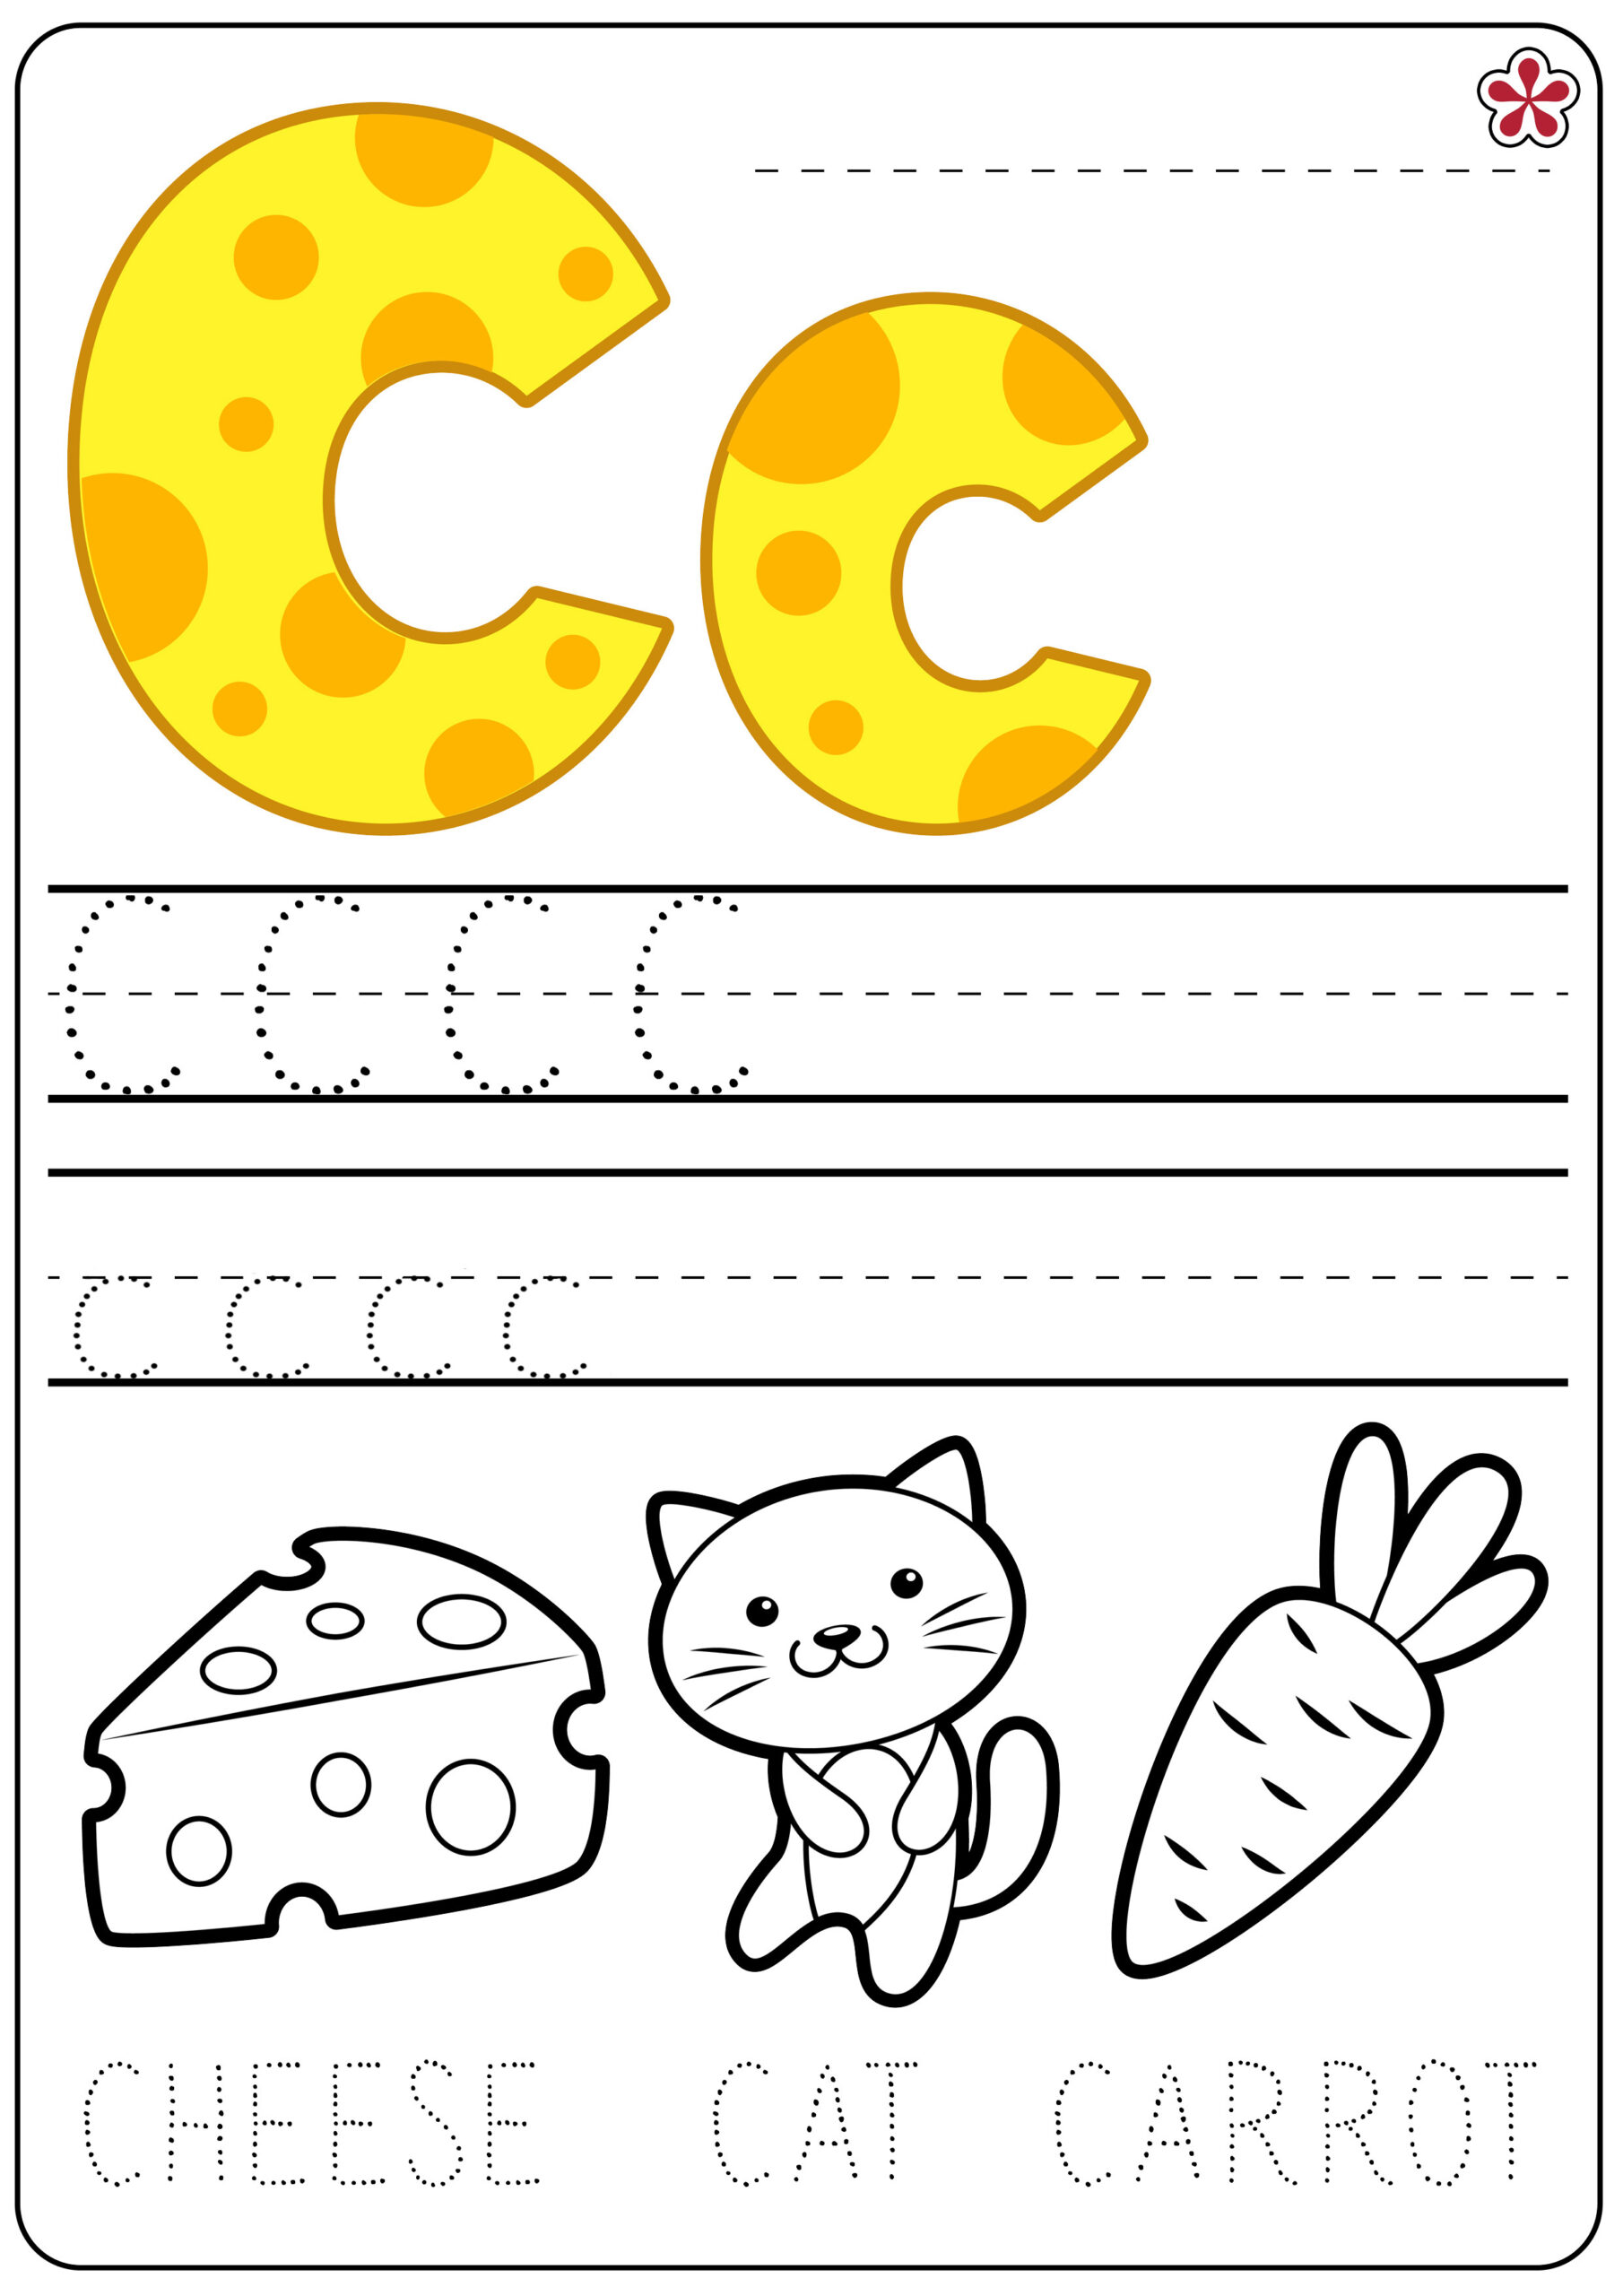 letter-c-tracing-worksheets-preschool-letter-tracing-worksheets